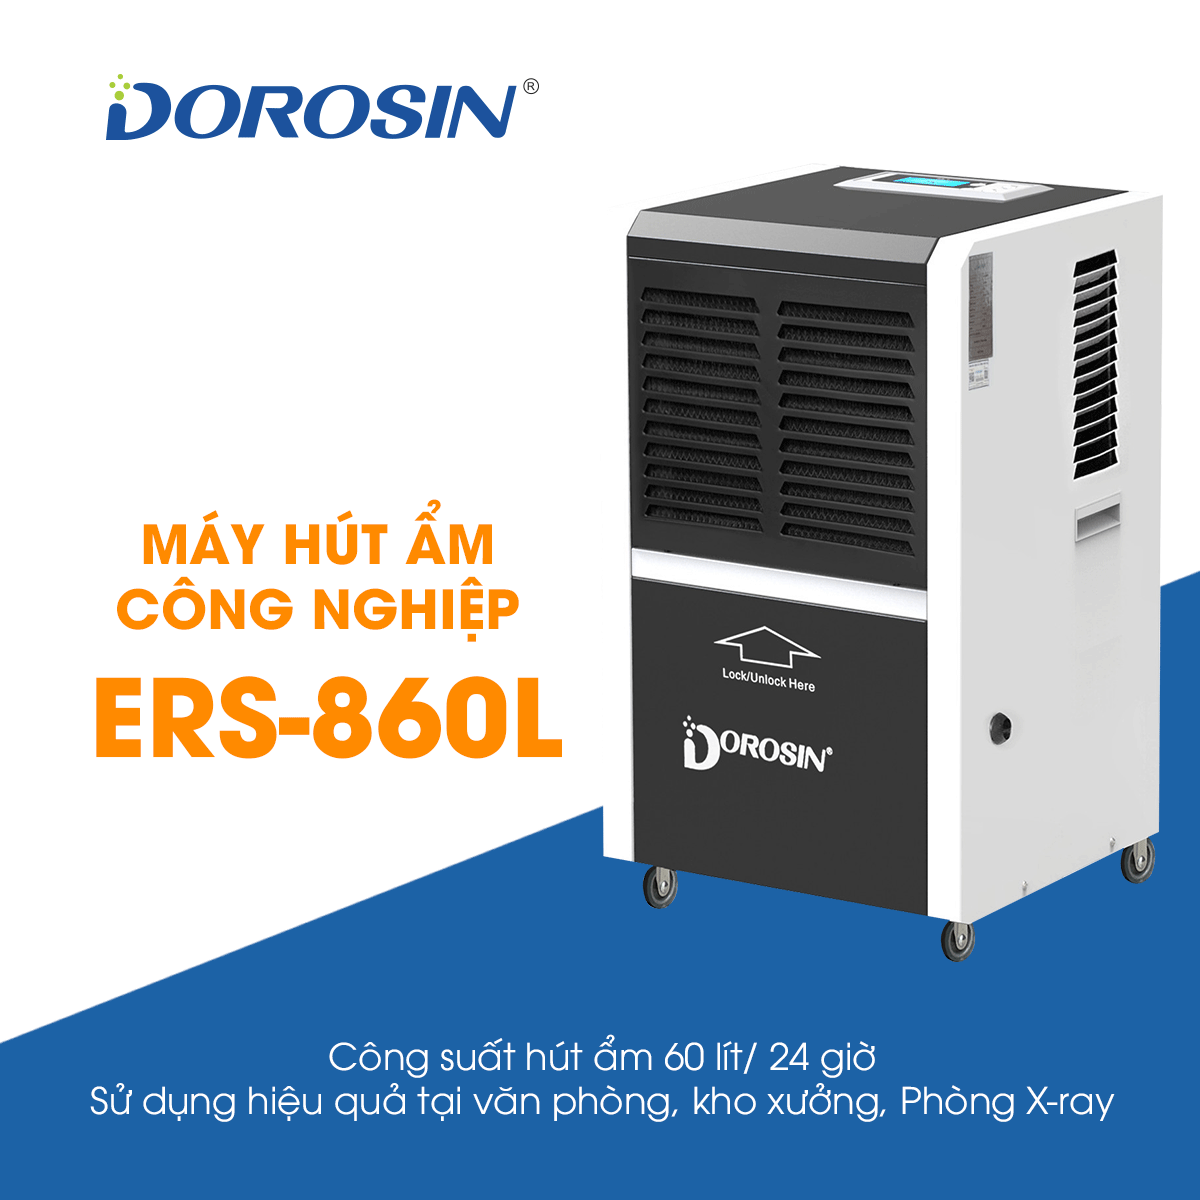 Máy hút ẩm công nghiệp Dorosin - diện tích dùng 80-120m2 - công suất 60 lít/24 giờ - dùng cho nhà xưởng, phòng y tế - Hàng nhập khẩu chính hãng